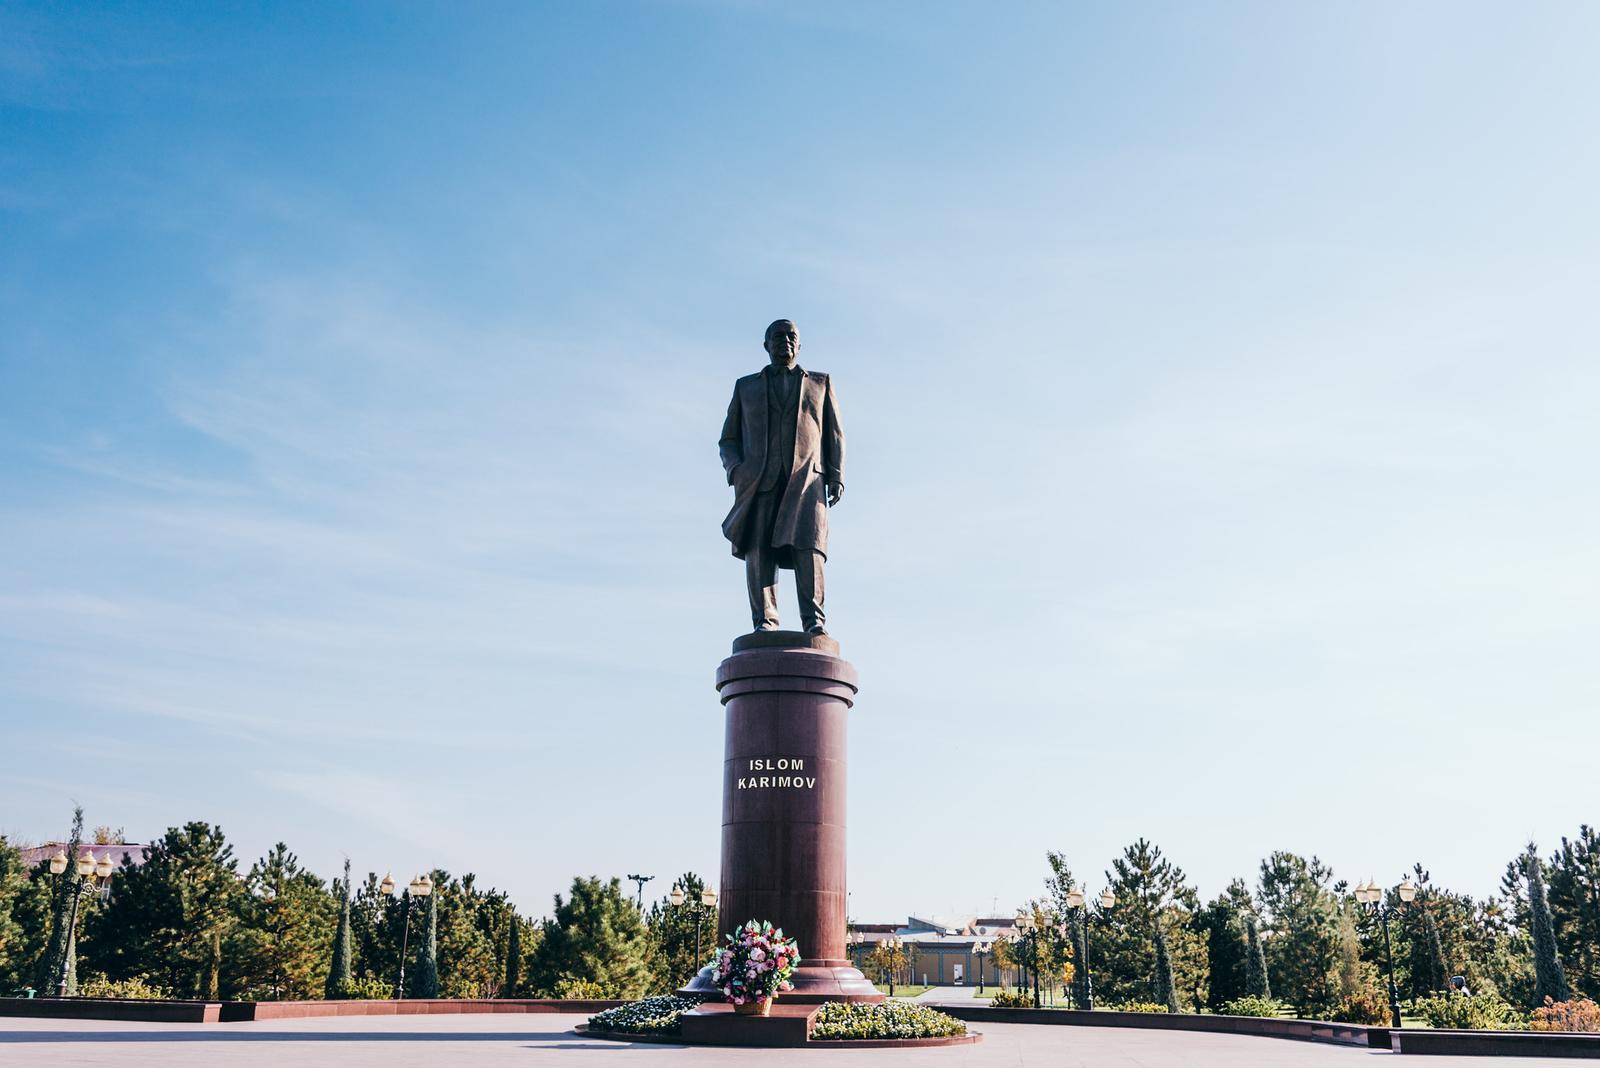 Tượng đài kỷ niệm Islom Karimov